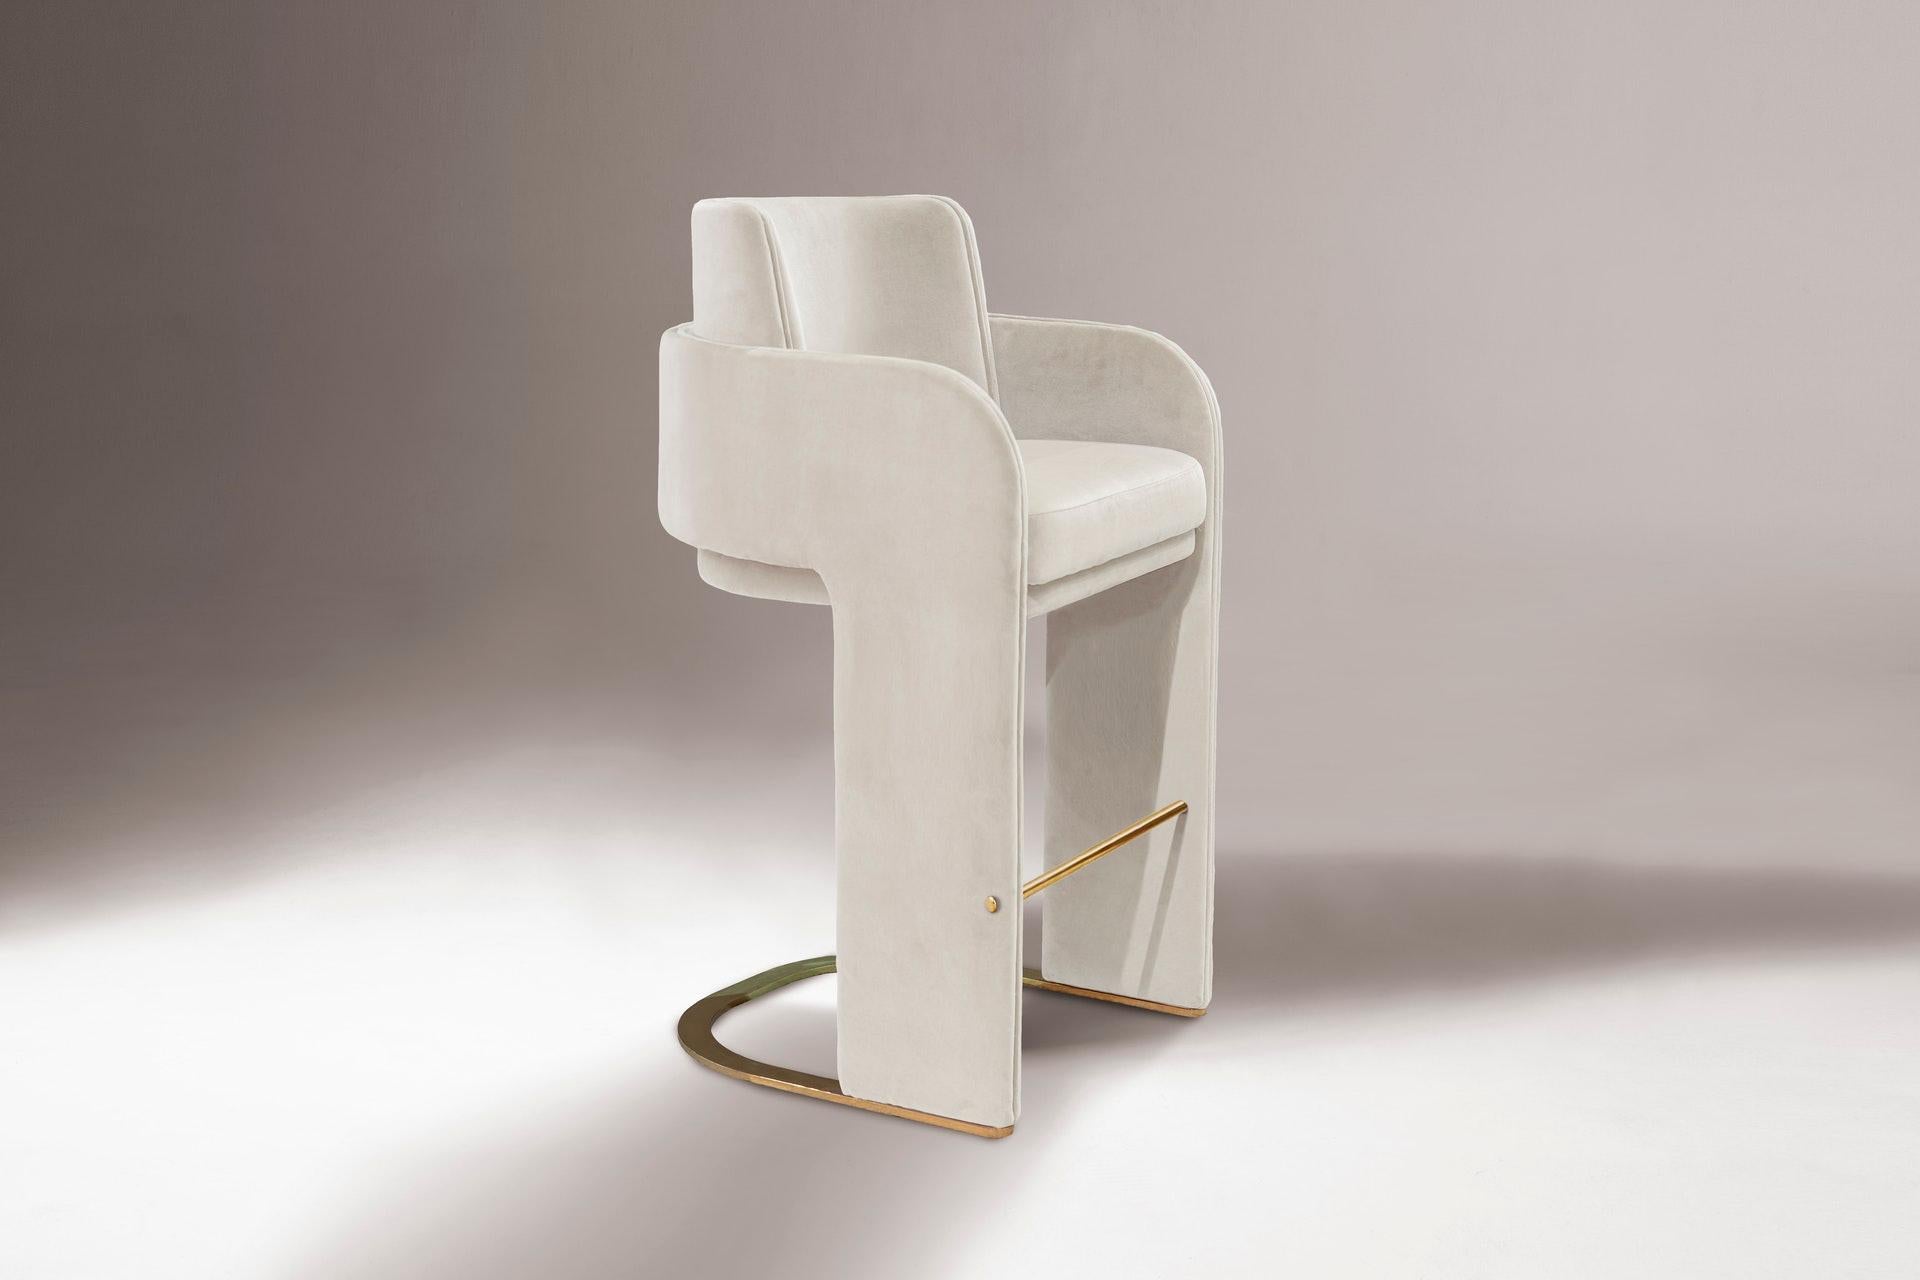 La chaise de comptoir Odisseia incarne l'esprit esthétique de l'ère spatiale, un nouveau type de luxe discret et de confort inspiré d'une ère futuriste créée par de nouvelles expériences visuelles et des concepts du futur. Cette pièce sans effort